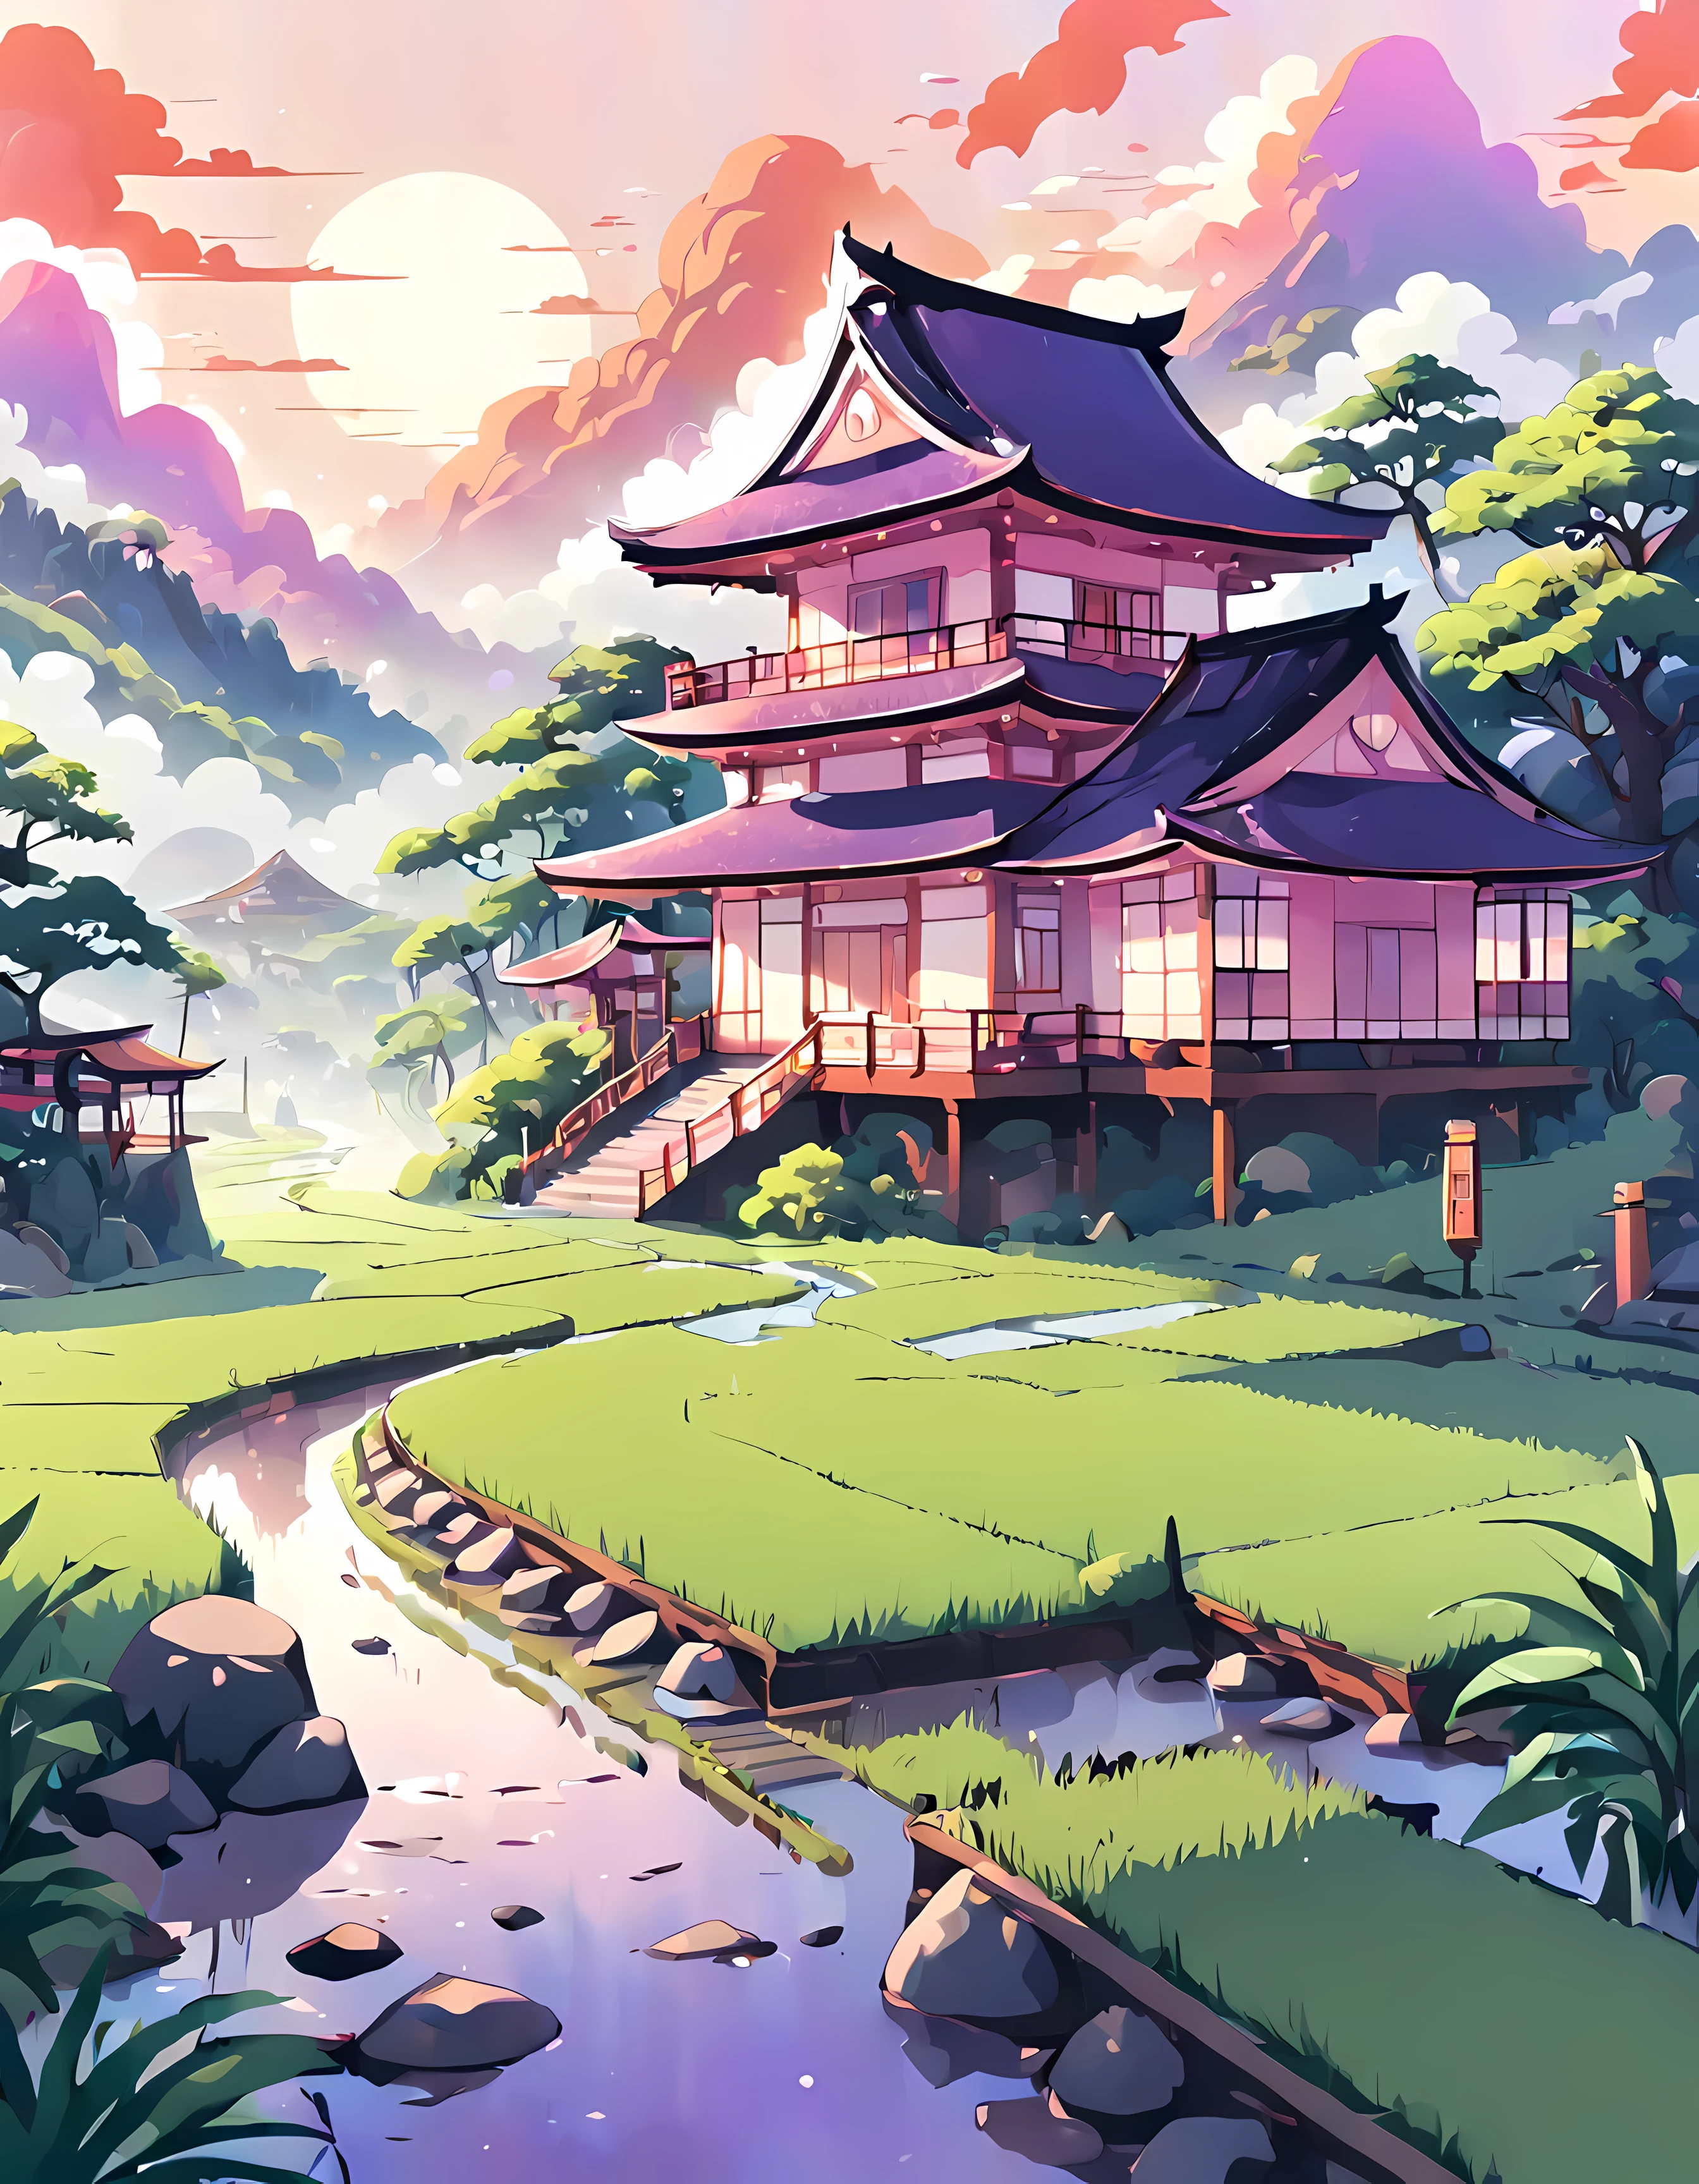 (Surrelation:1.4), süßer Anime-Stil, Entwerfen Sie ein fesselndes Bild von einem ((mystischer Nebel)) schwebend über einem ((üppiges Reisfeld)), faszinierende Morgendämmerung mit Orangetönen, Pink und lila, (japanische architektur), wolkig, verträumt, Meisterwerk in maximaler 16K-Auflösung, hervorragende Qualität. | ((Mehr_Detail))